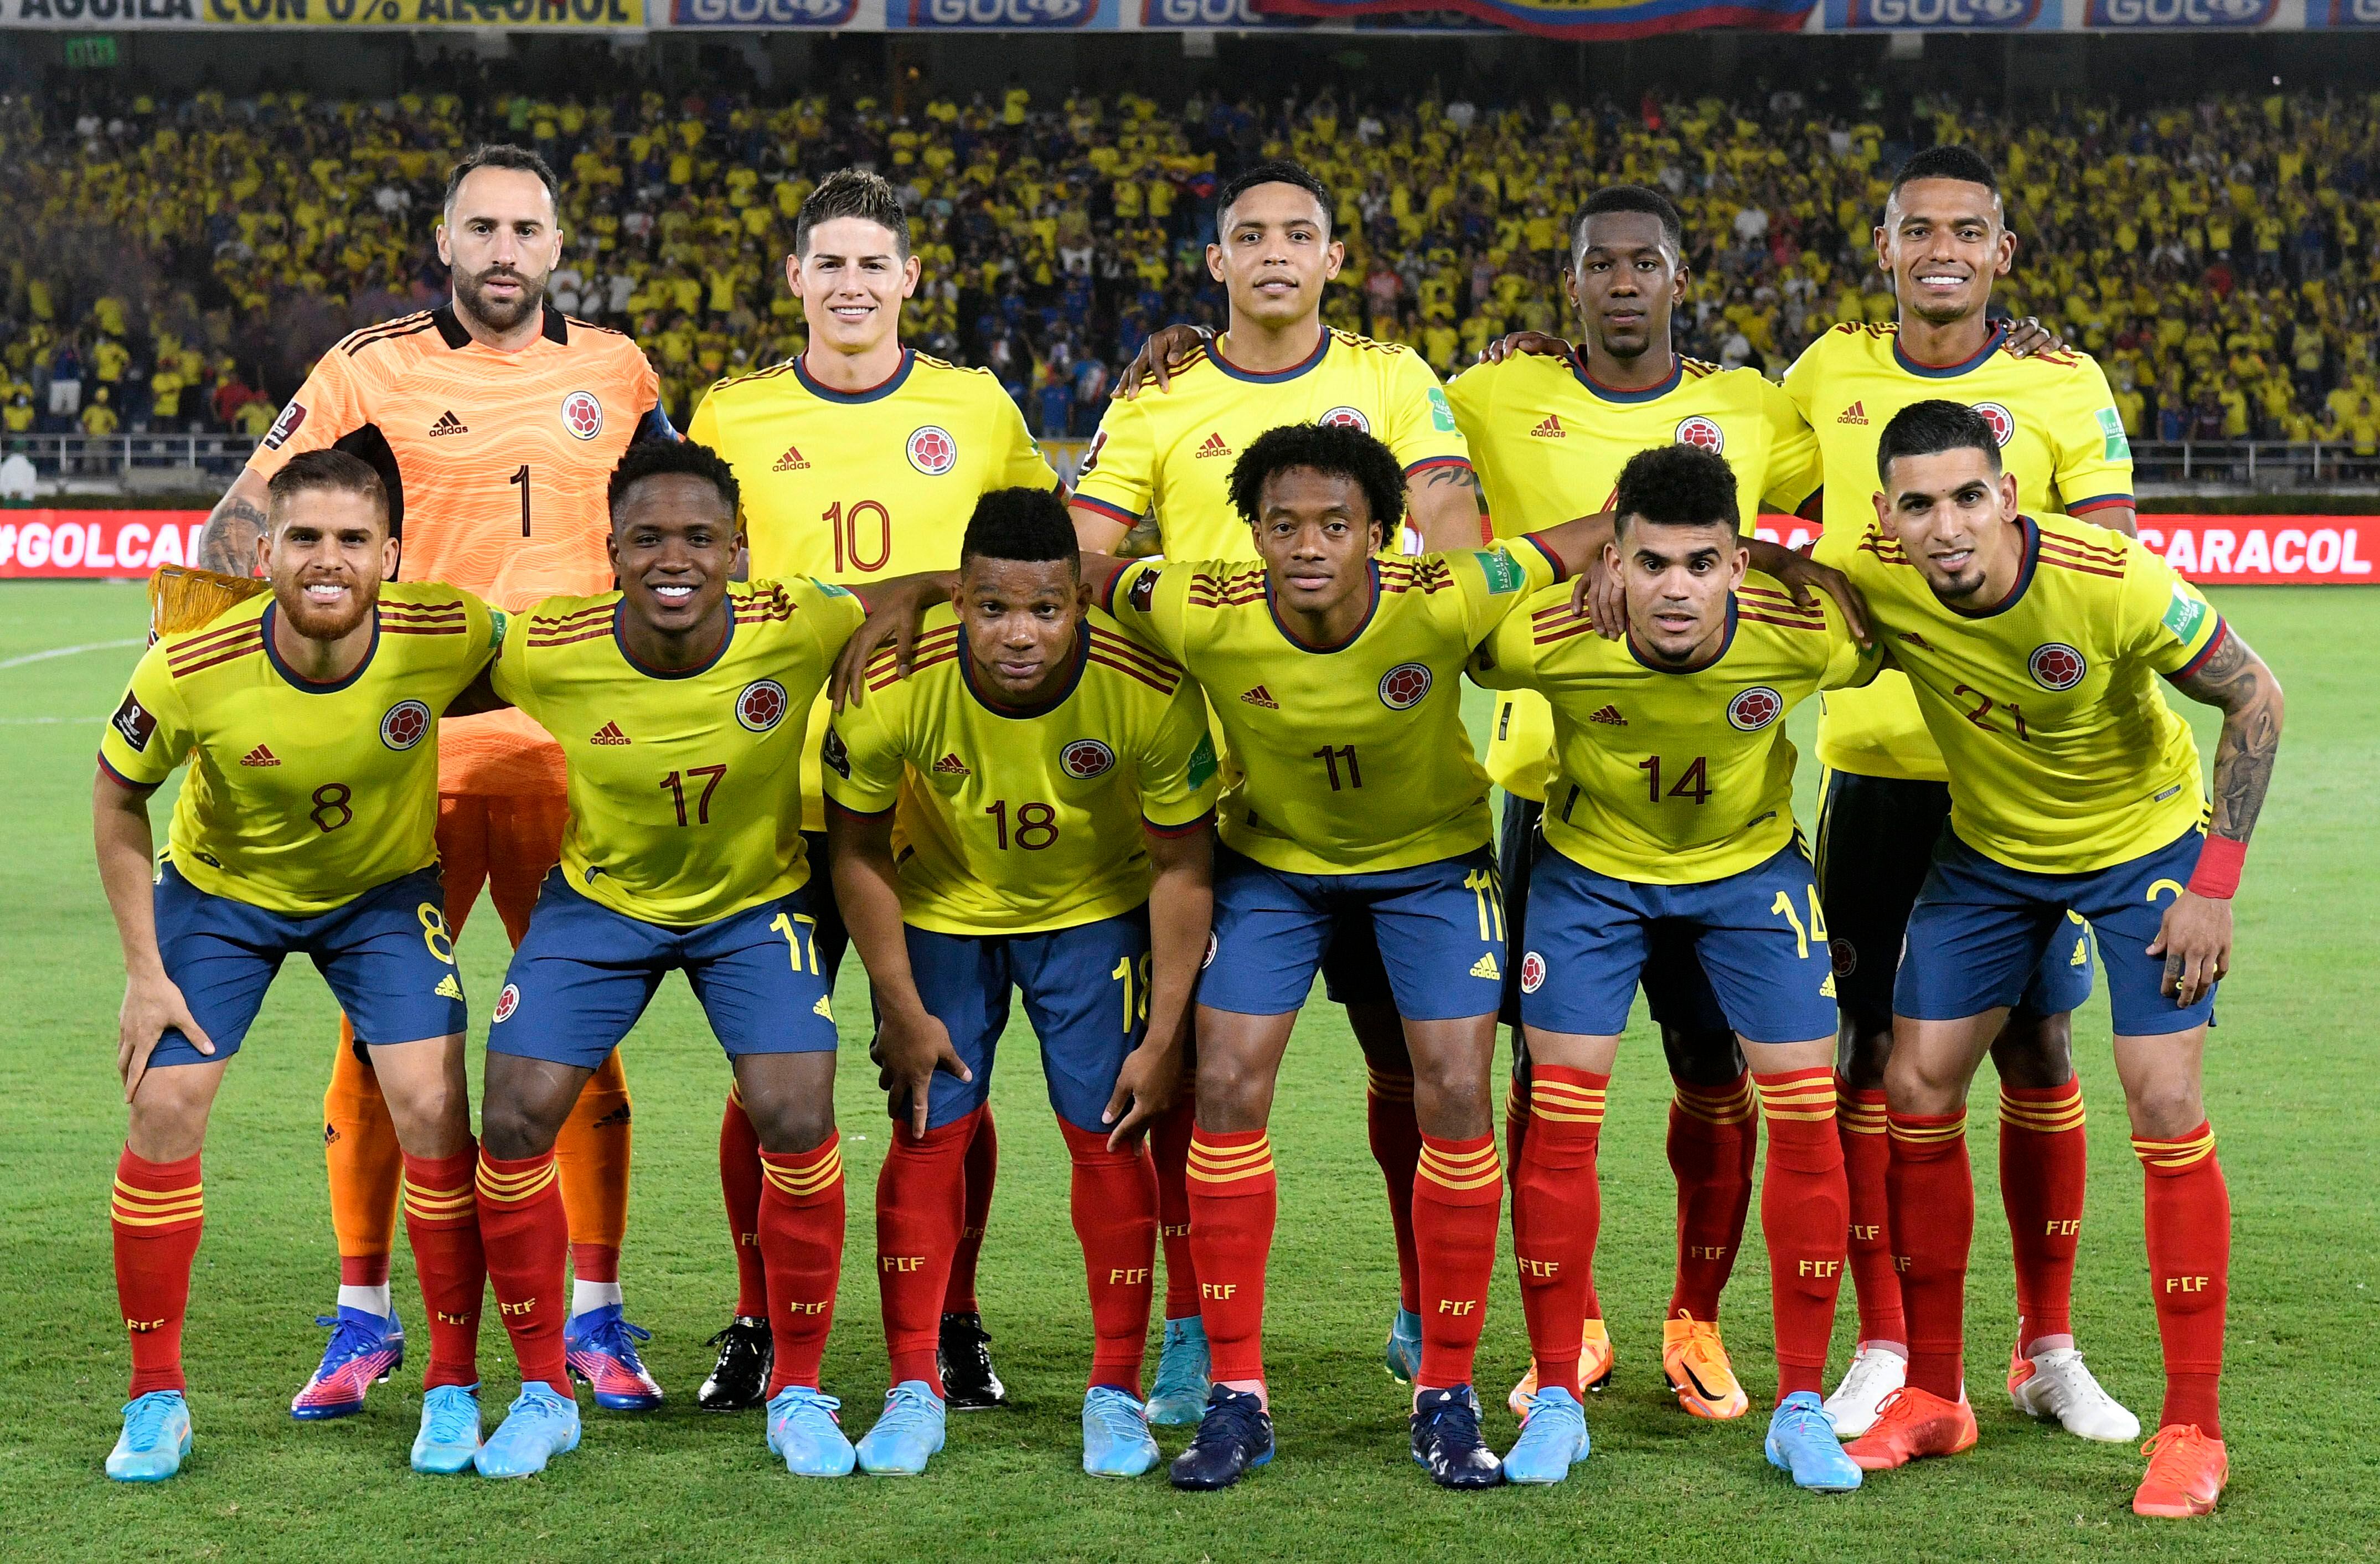 Este fue el equipo de Colombia que comenzó el invicto de 20 fechas, enfrentando a Bolivia en marzo de 2022 - crédito FCF